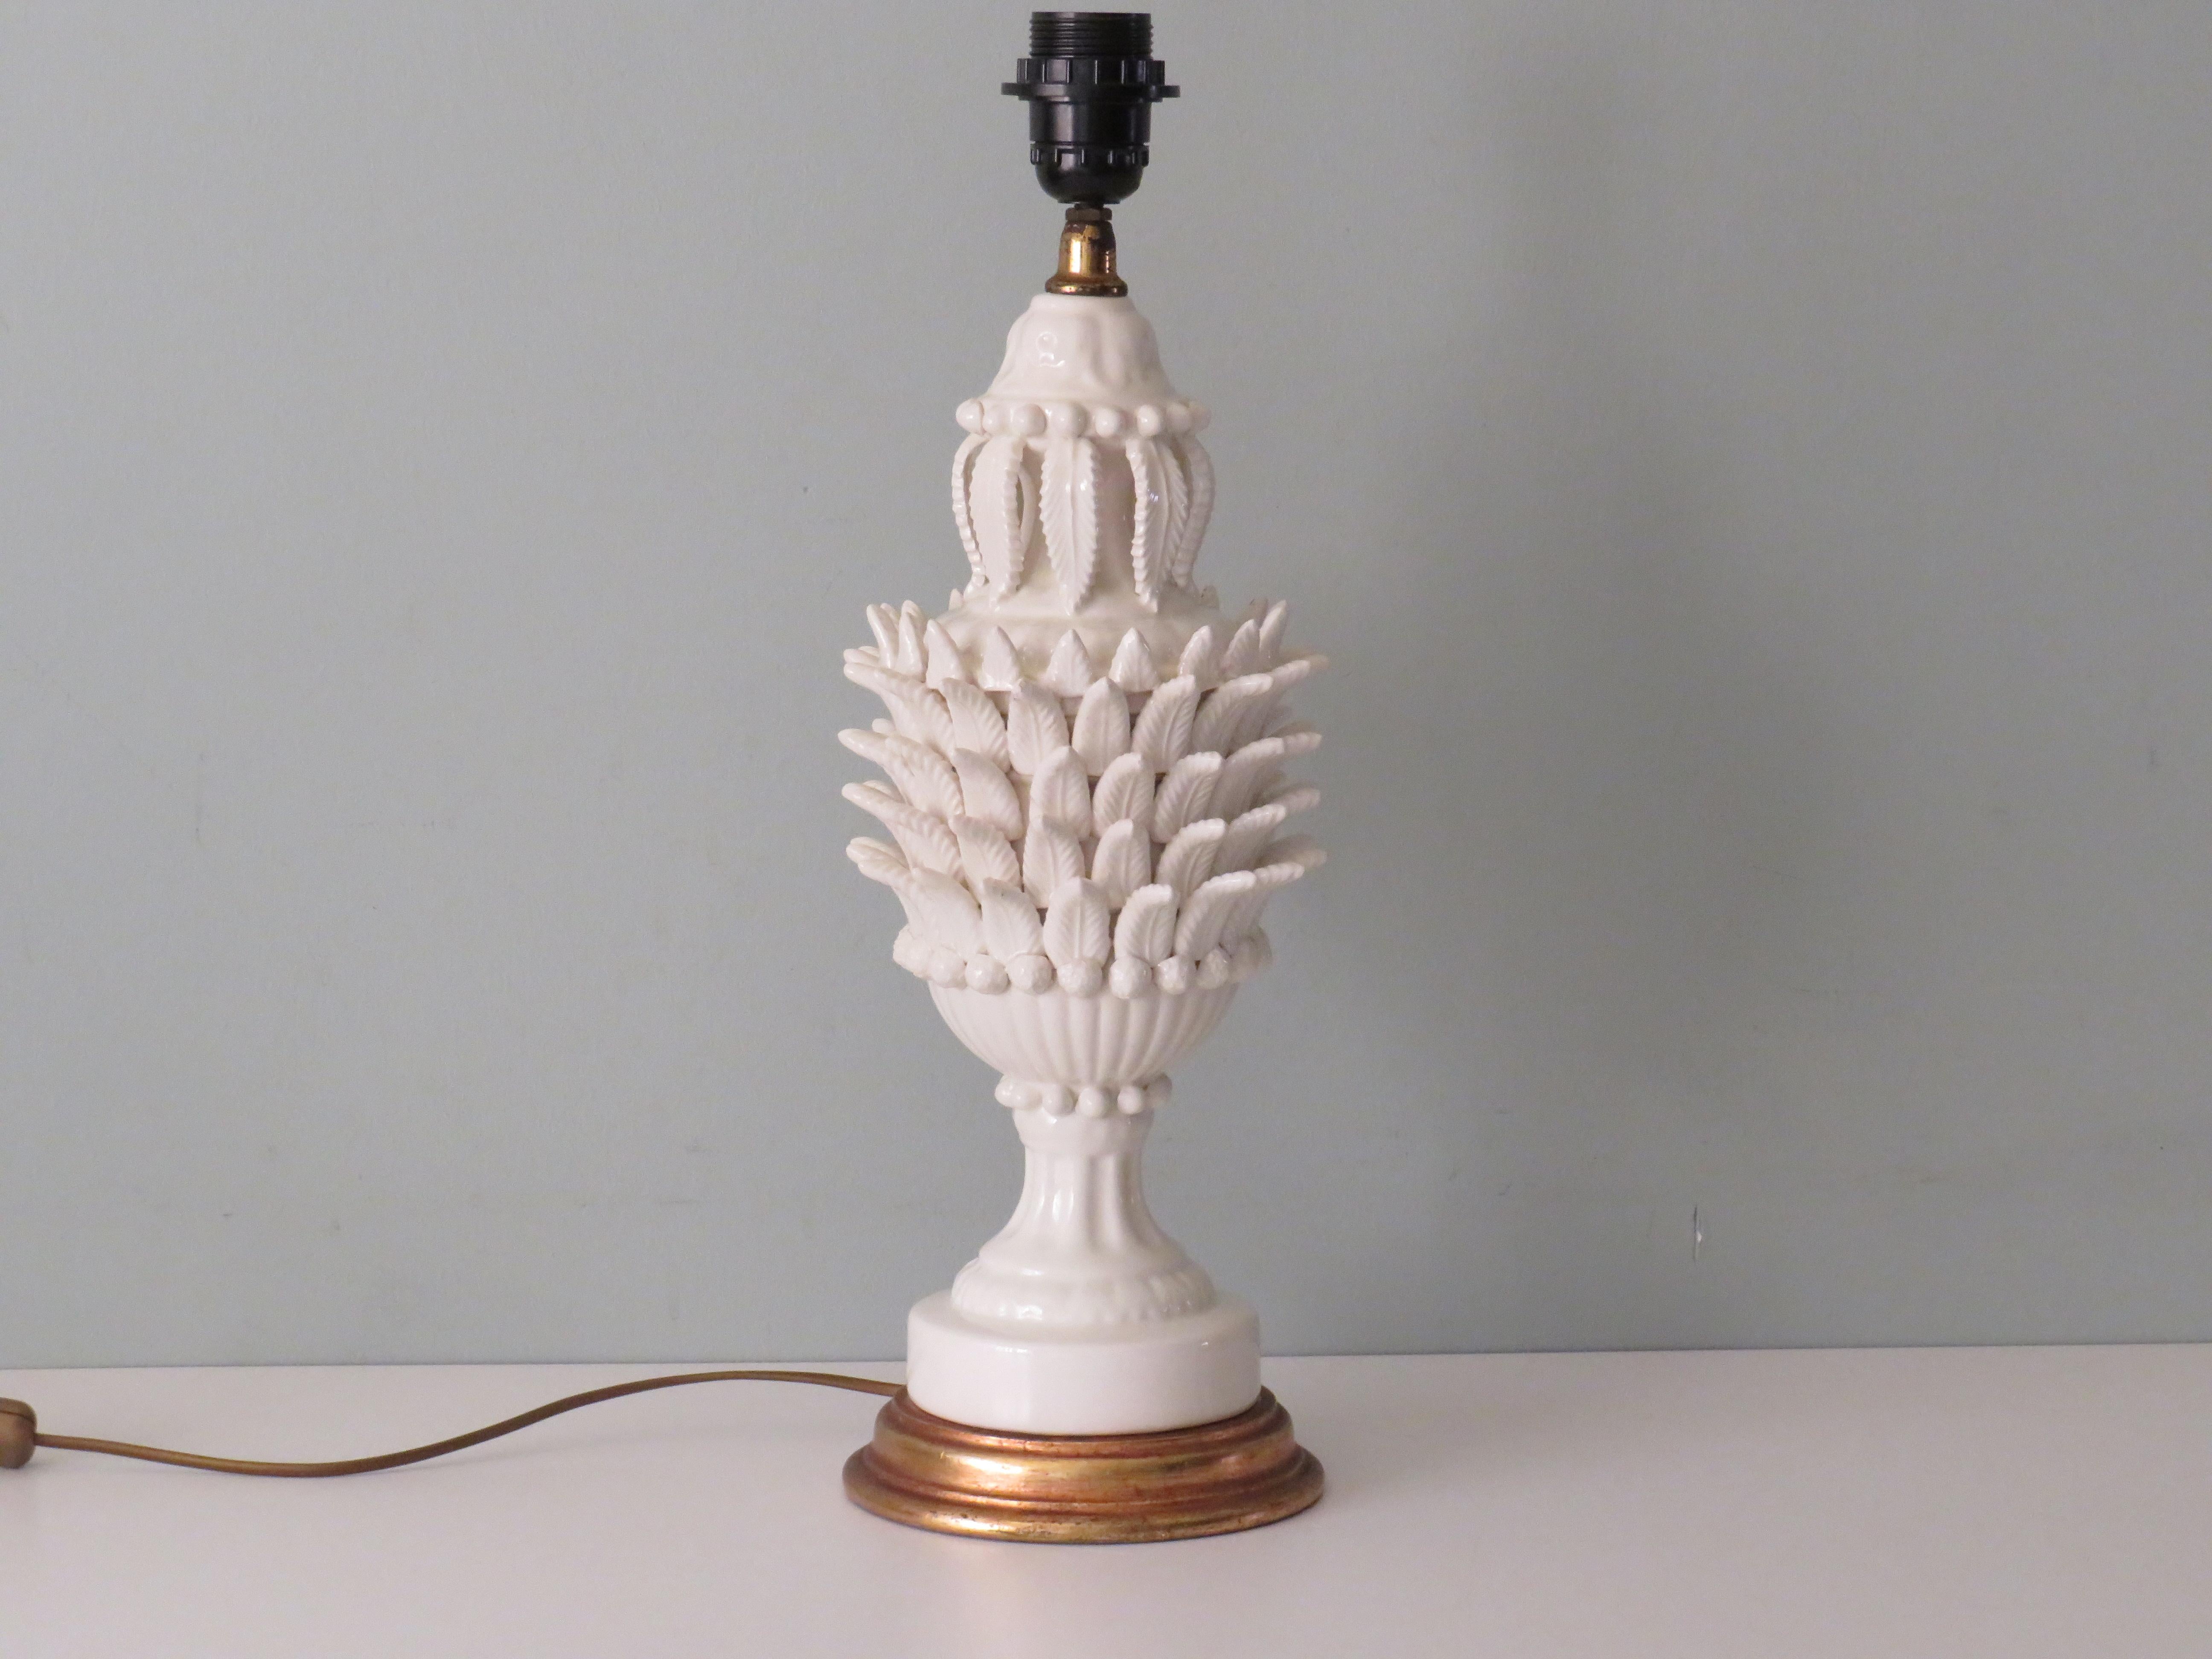 Magnifique pied de lampe détaillé de Bondia Manises en céramique émaillée blanche sur une base en bois doré. 
Mesures : Hauteur : 49 cm max. Diamètre : 15 cm. 
La lampe est dotée d'un raccord E 27 et d'un câblage entièrement doré avec bouton